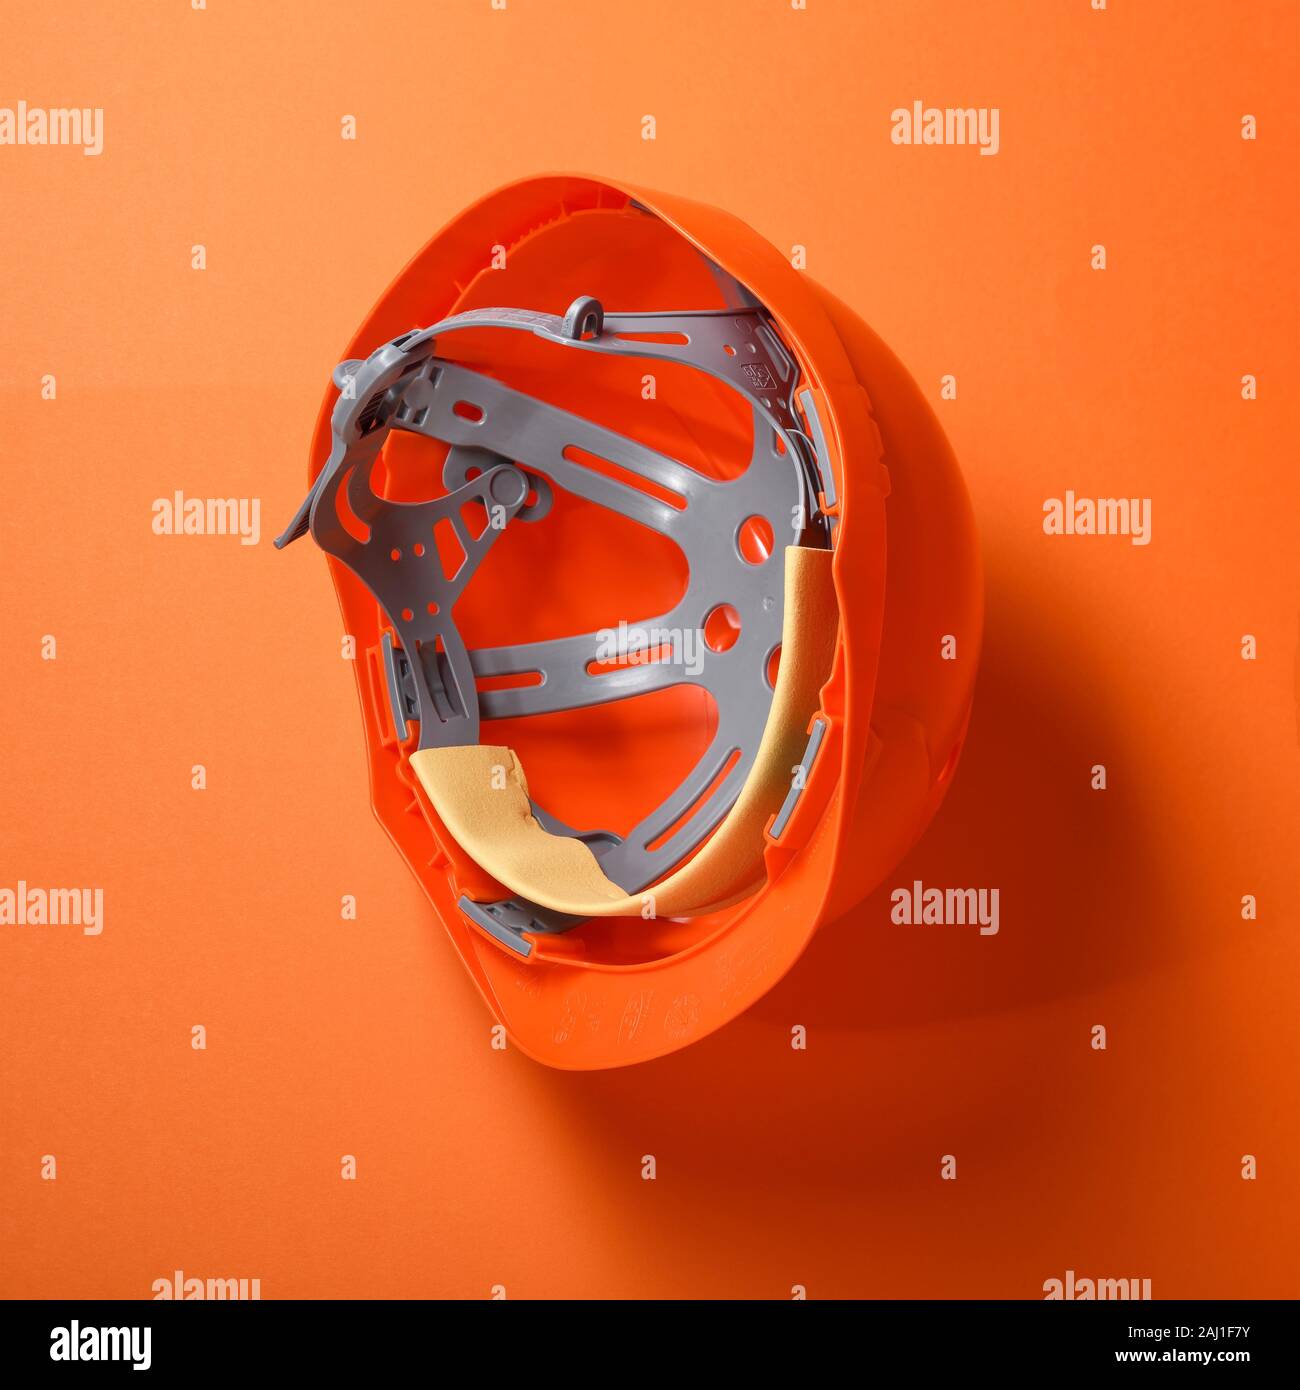 Un casco de seguridad hard hat naranja sobre un fondo naranja Foto de stock